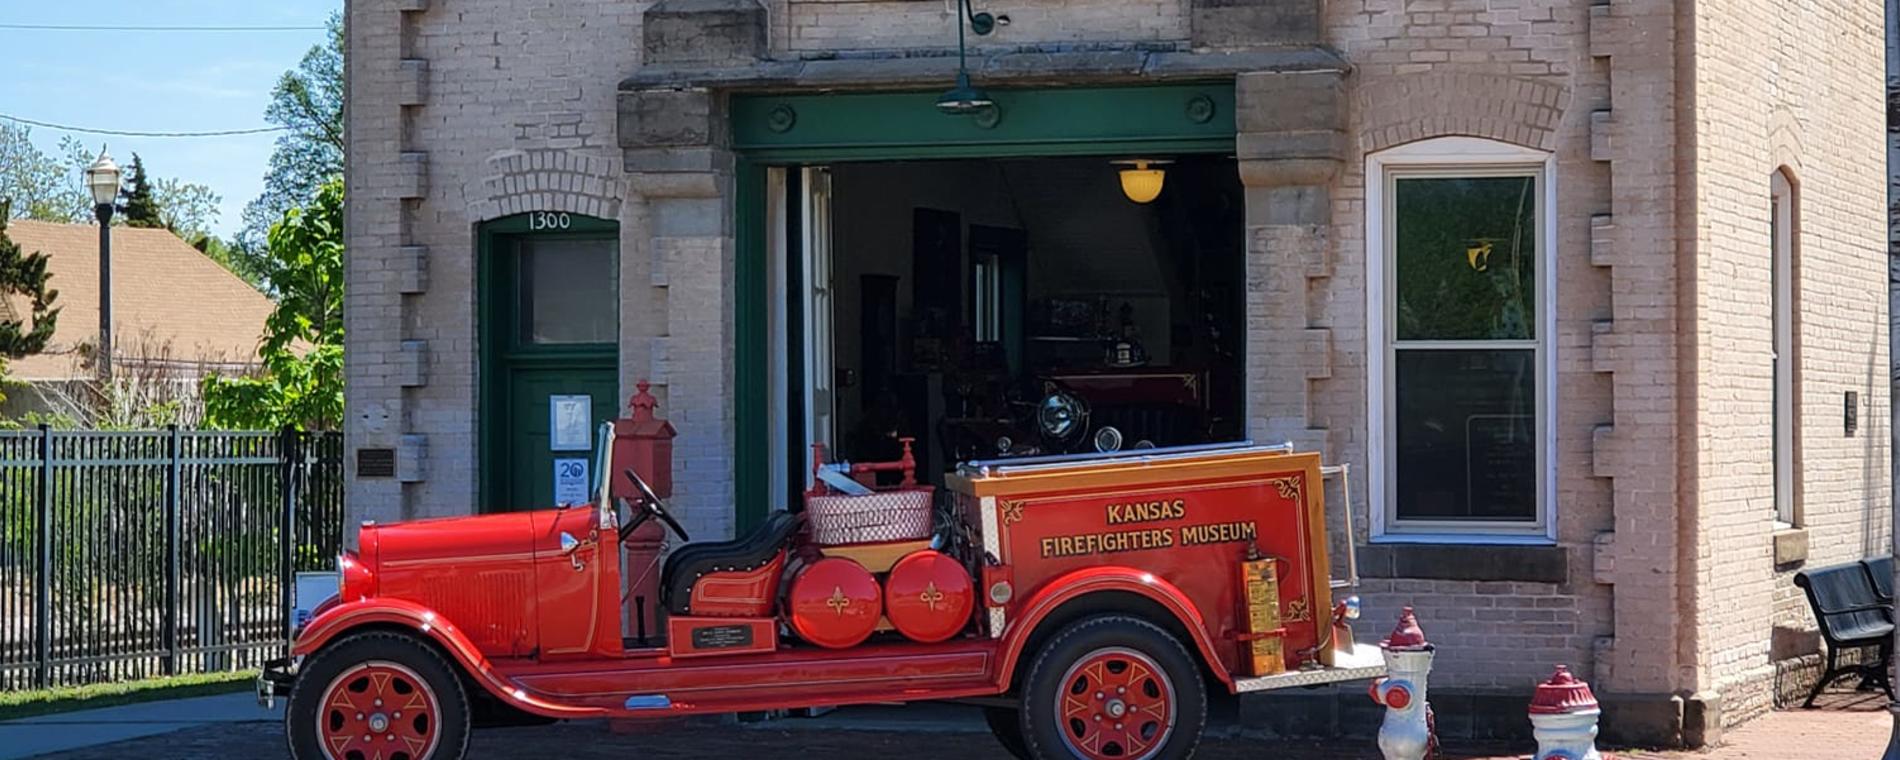 Kansas Firefighter Museum Exterior